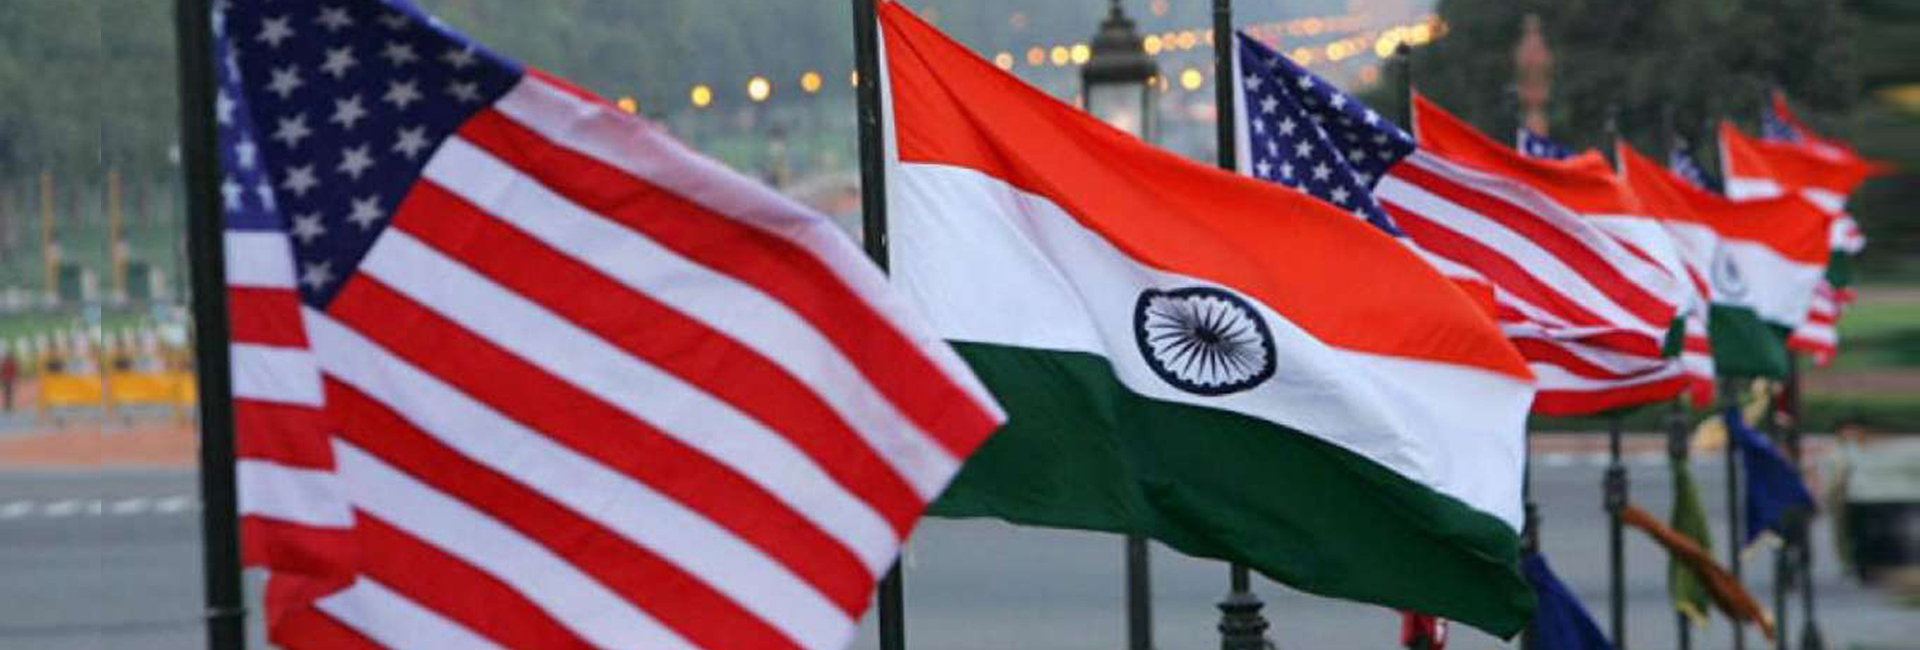 Познакомьтесь с американскими политиками индийского происхождения, участвующими в промежуточных выборах в США в 2022 году.